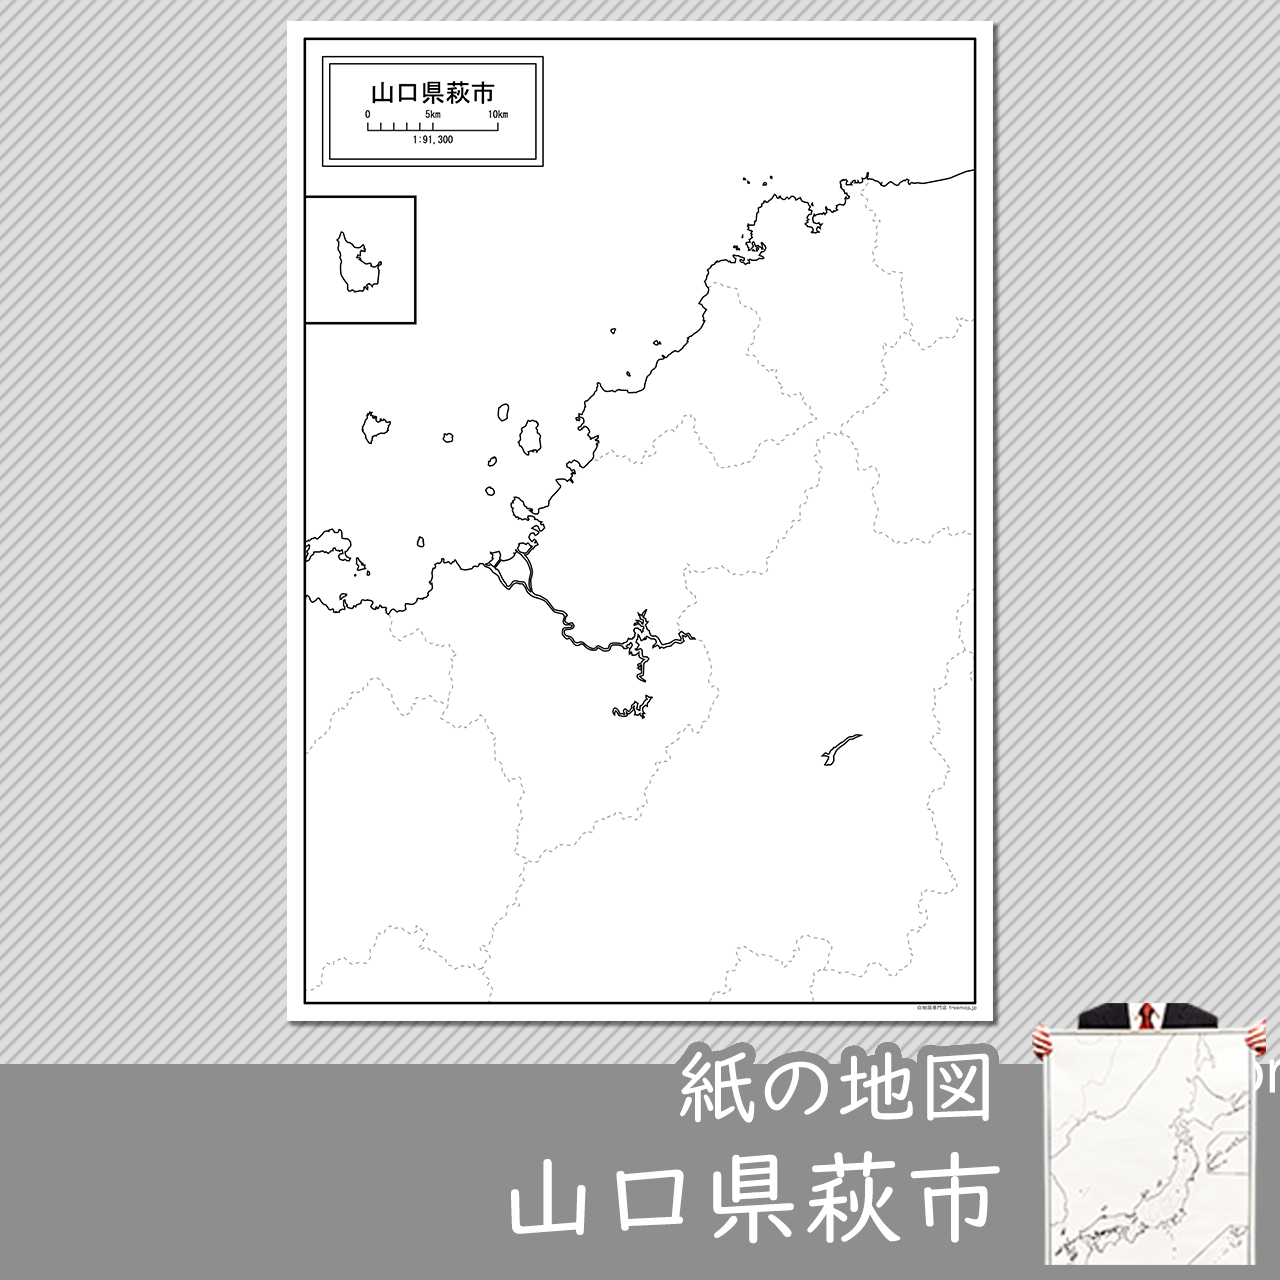 萩市の紙の白地図のサムネイル